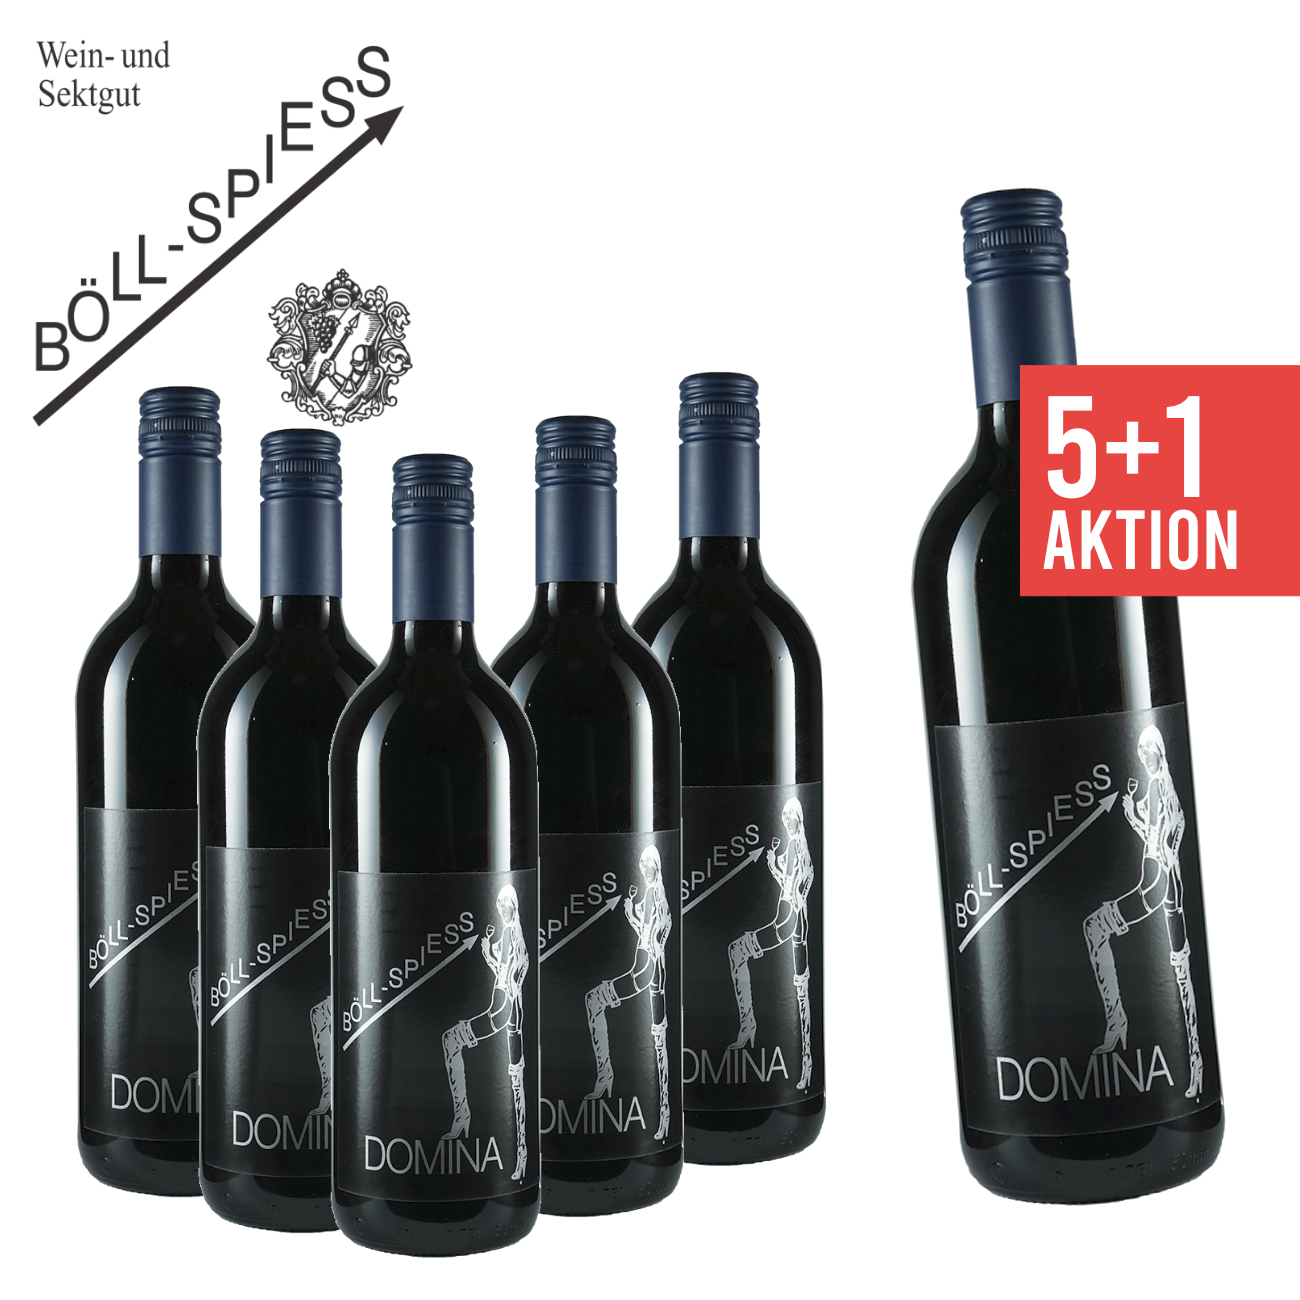 5+1 Domina Spätlese | Pfälzer - Wein 0,75 trocken Weingut L Böll-Spiess